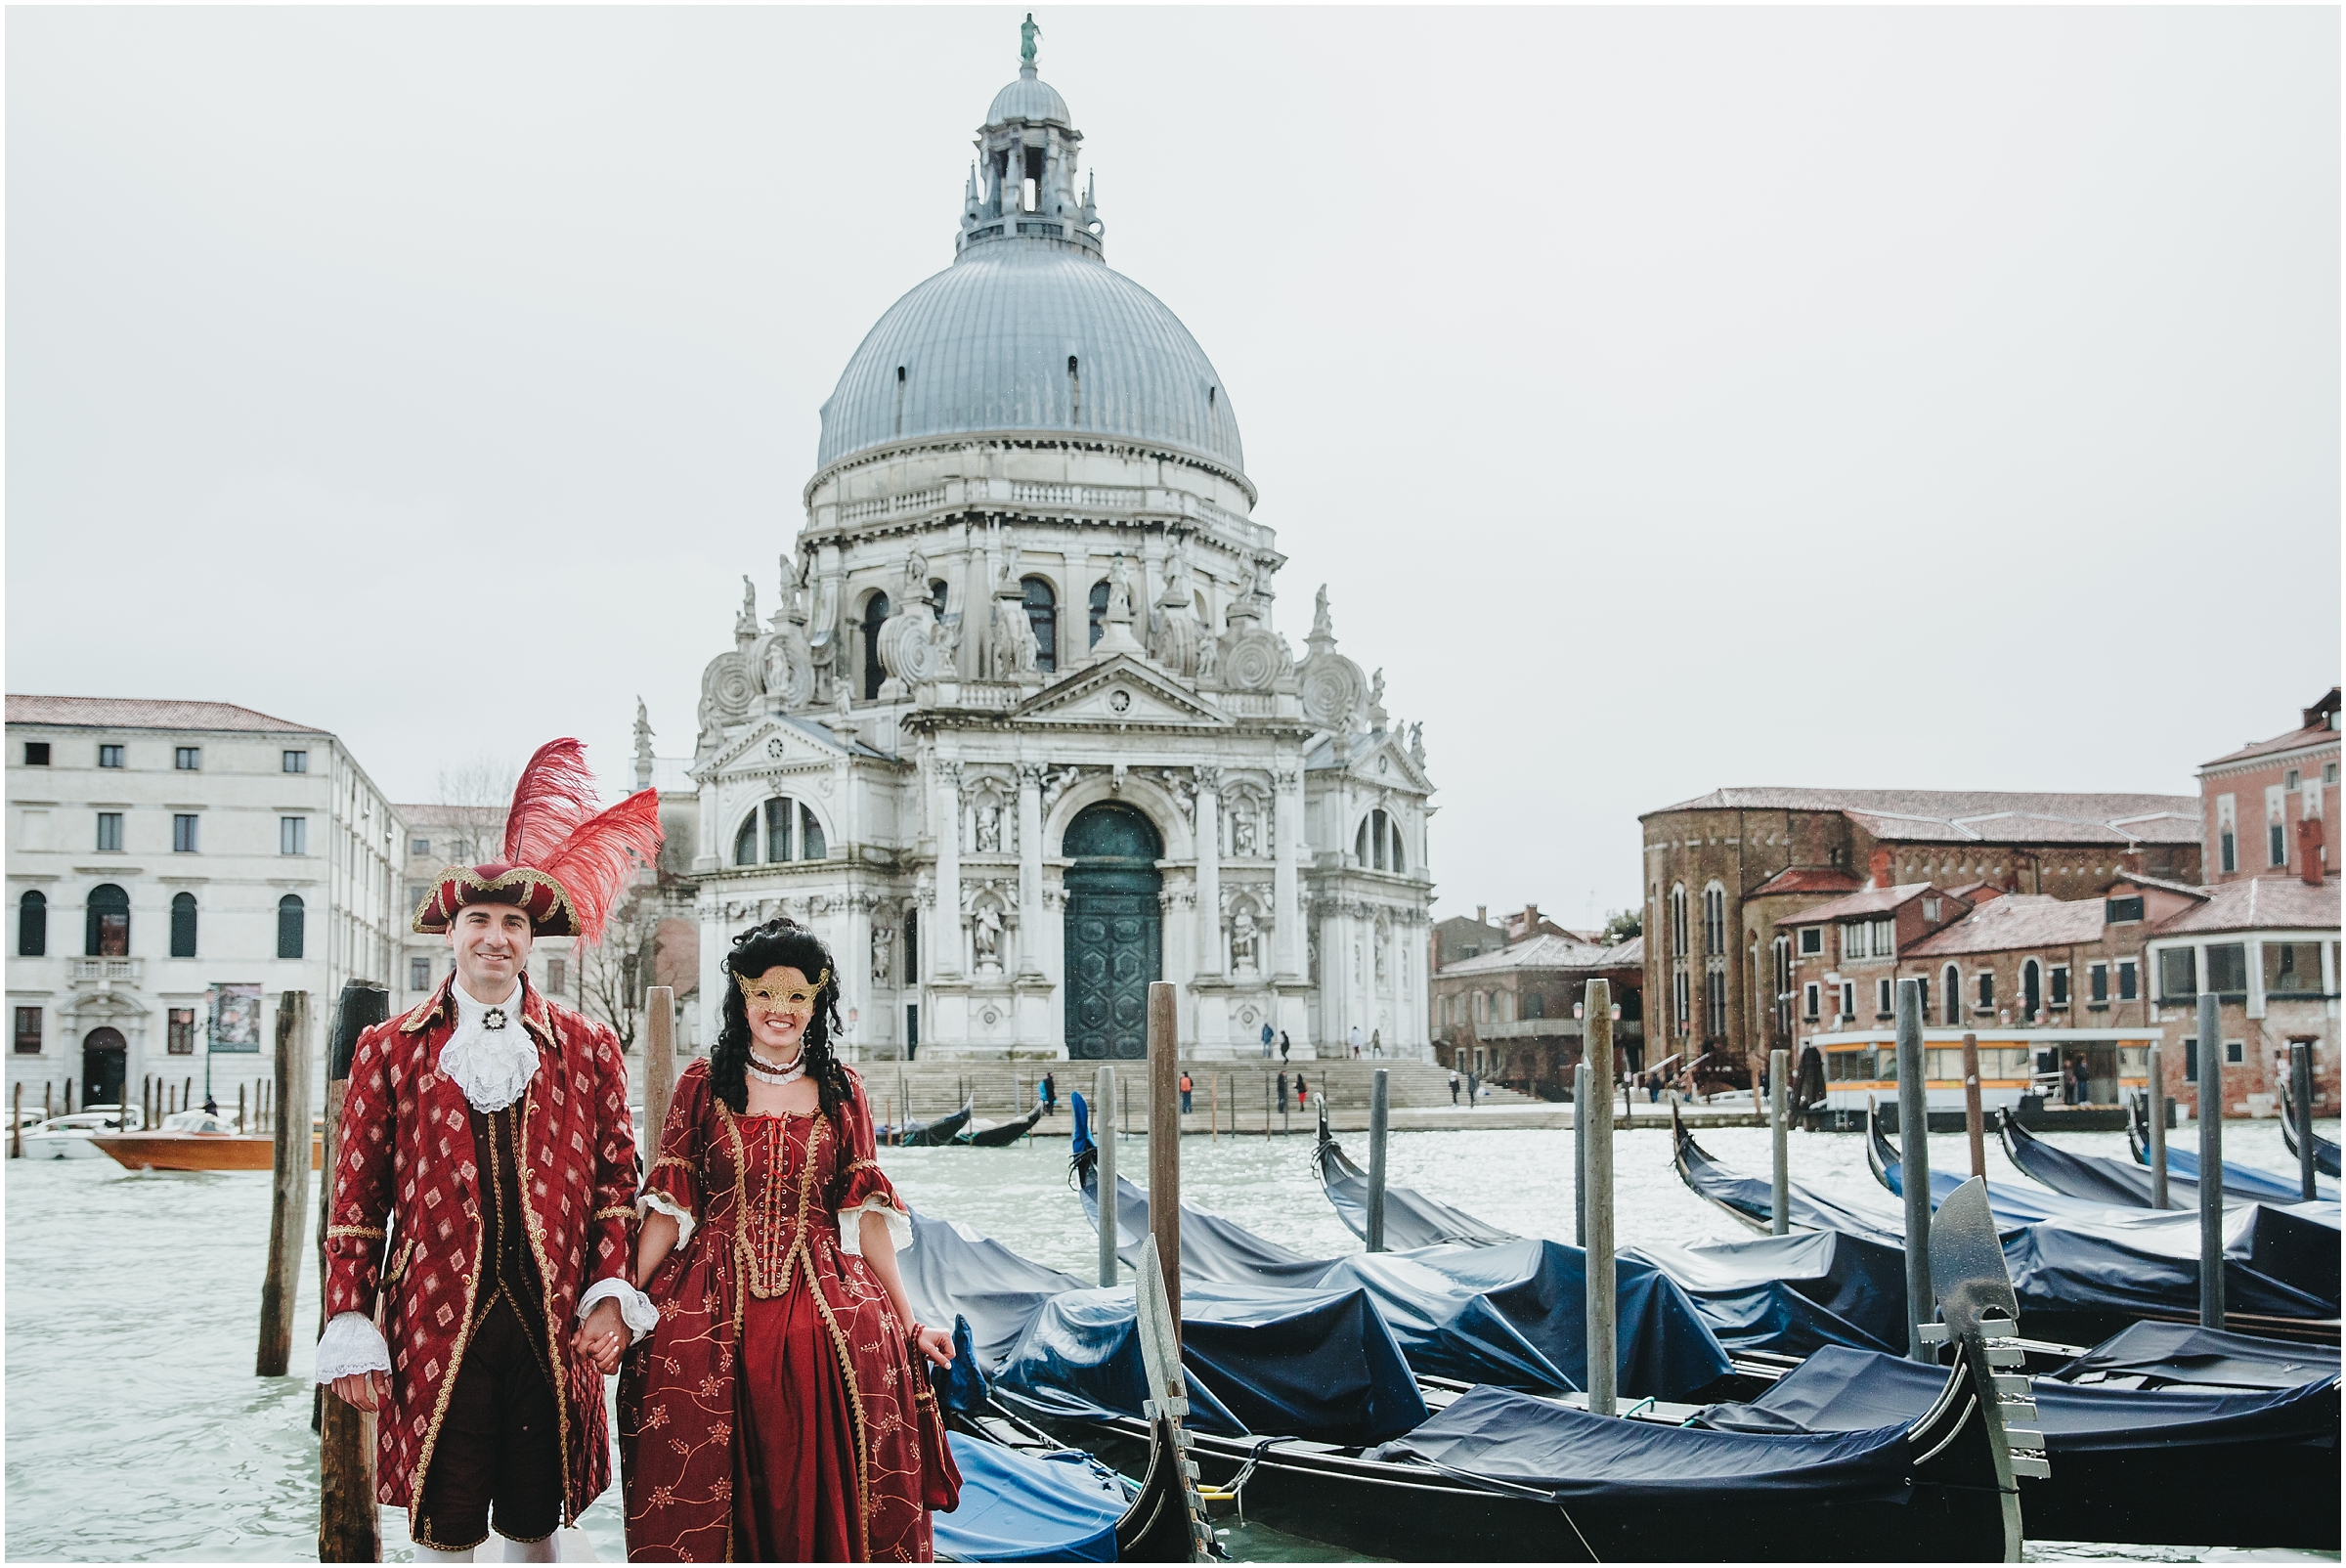 Venice Carnival 2018 - 11.jpg